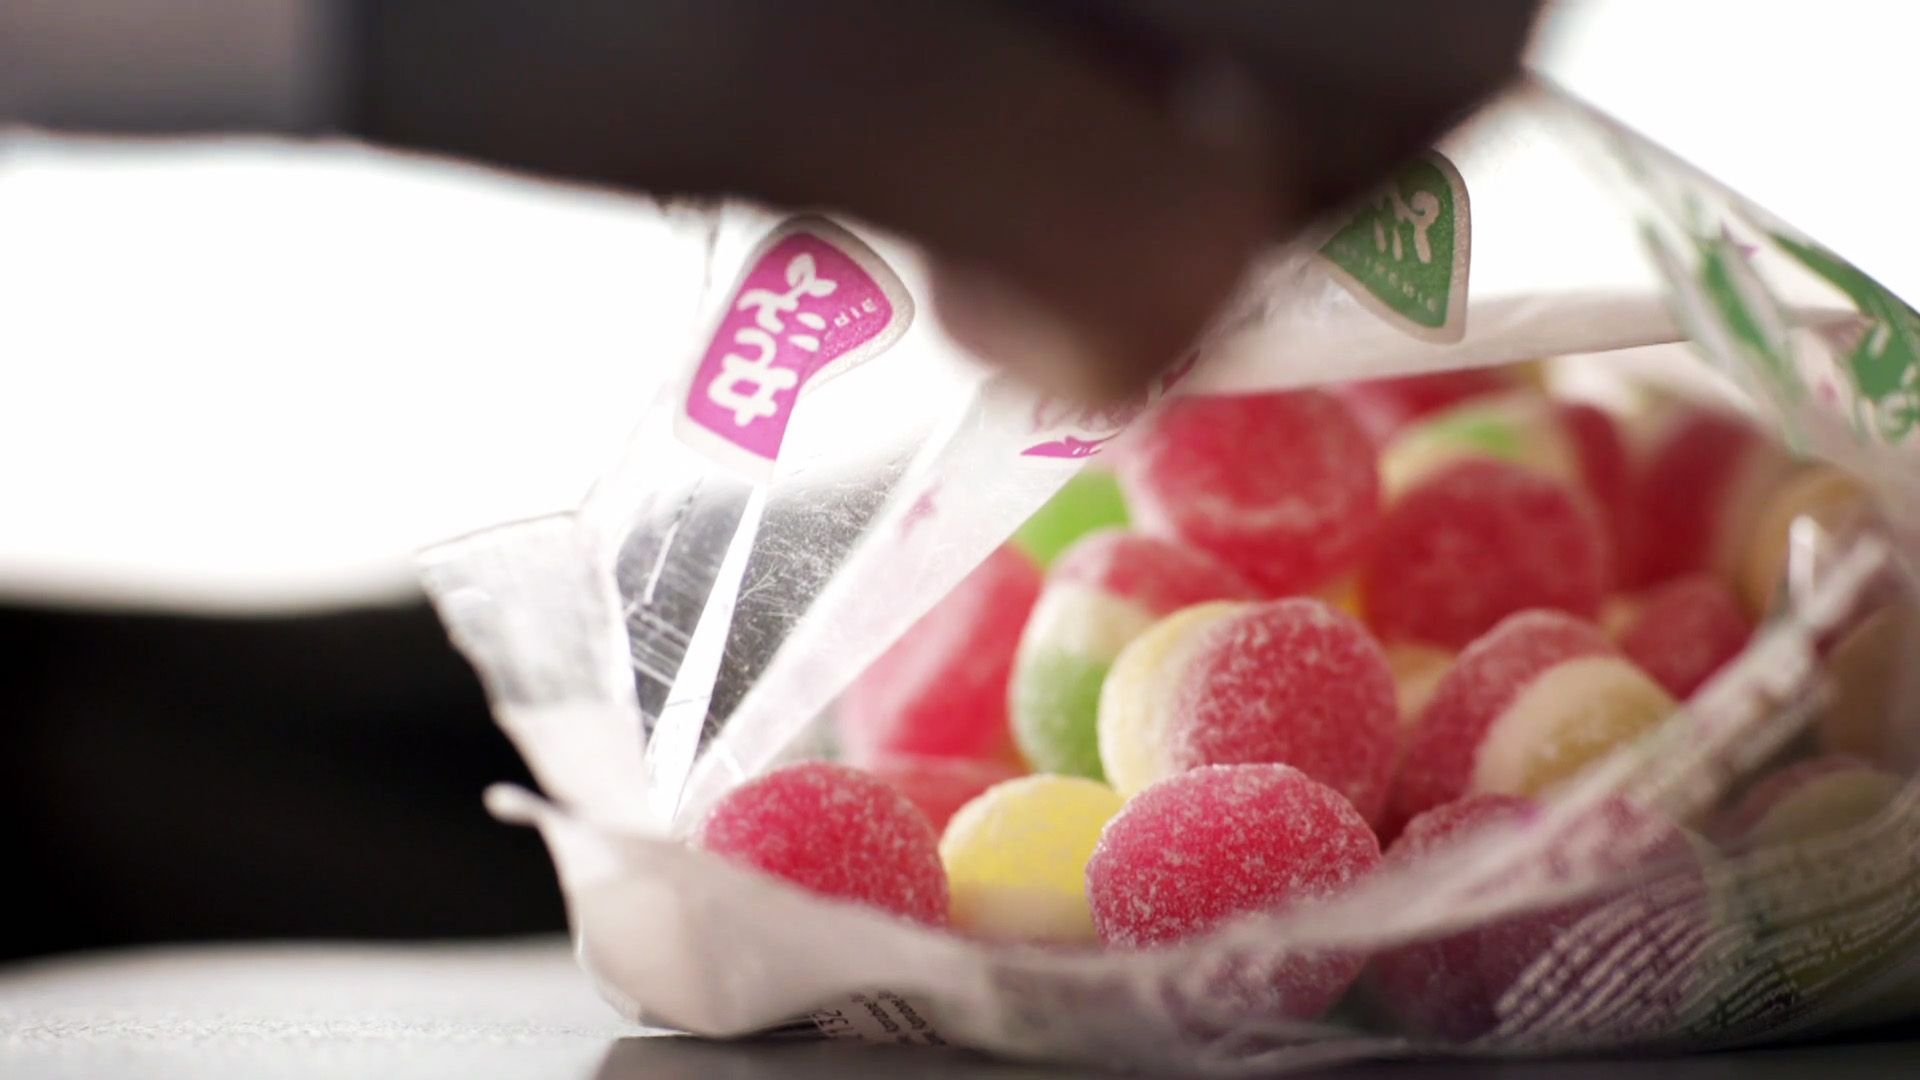 Fabrication des bonbons: la vidéo qui risque de vous dégoûter à tout jamais  